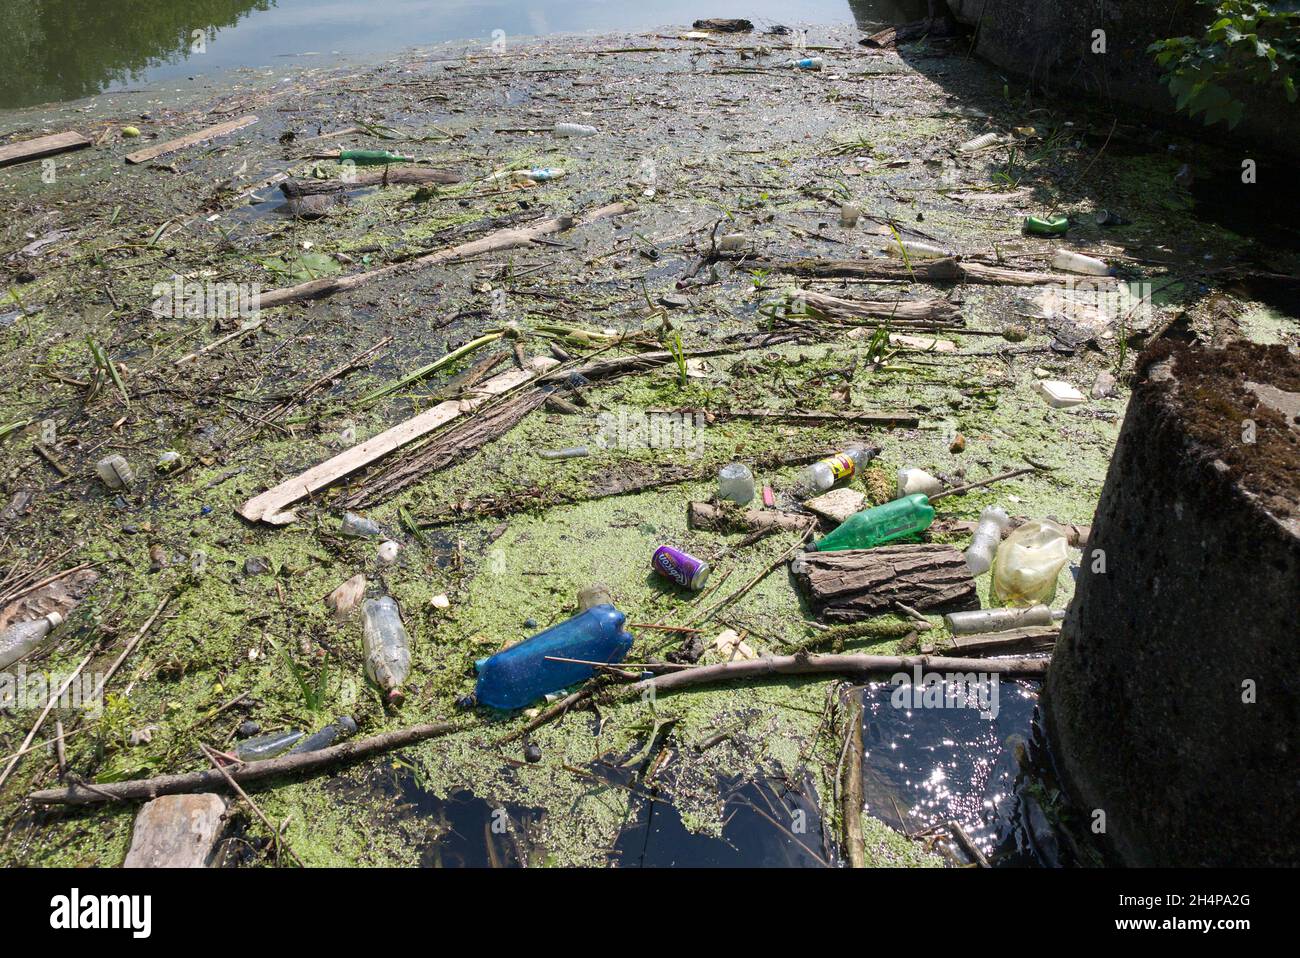 Entsetzlicher, auf der Themse schwimmender Müll. Glücklicherweise ist das heutzutage kein üblicher Anblick. Bei der Abschwächung entwickelte sich dieses Seher in einer stagnierenden, geschützten st Stockfoto